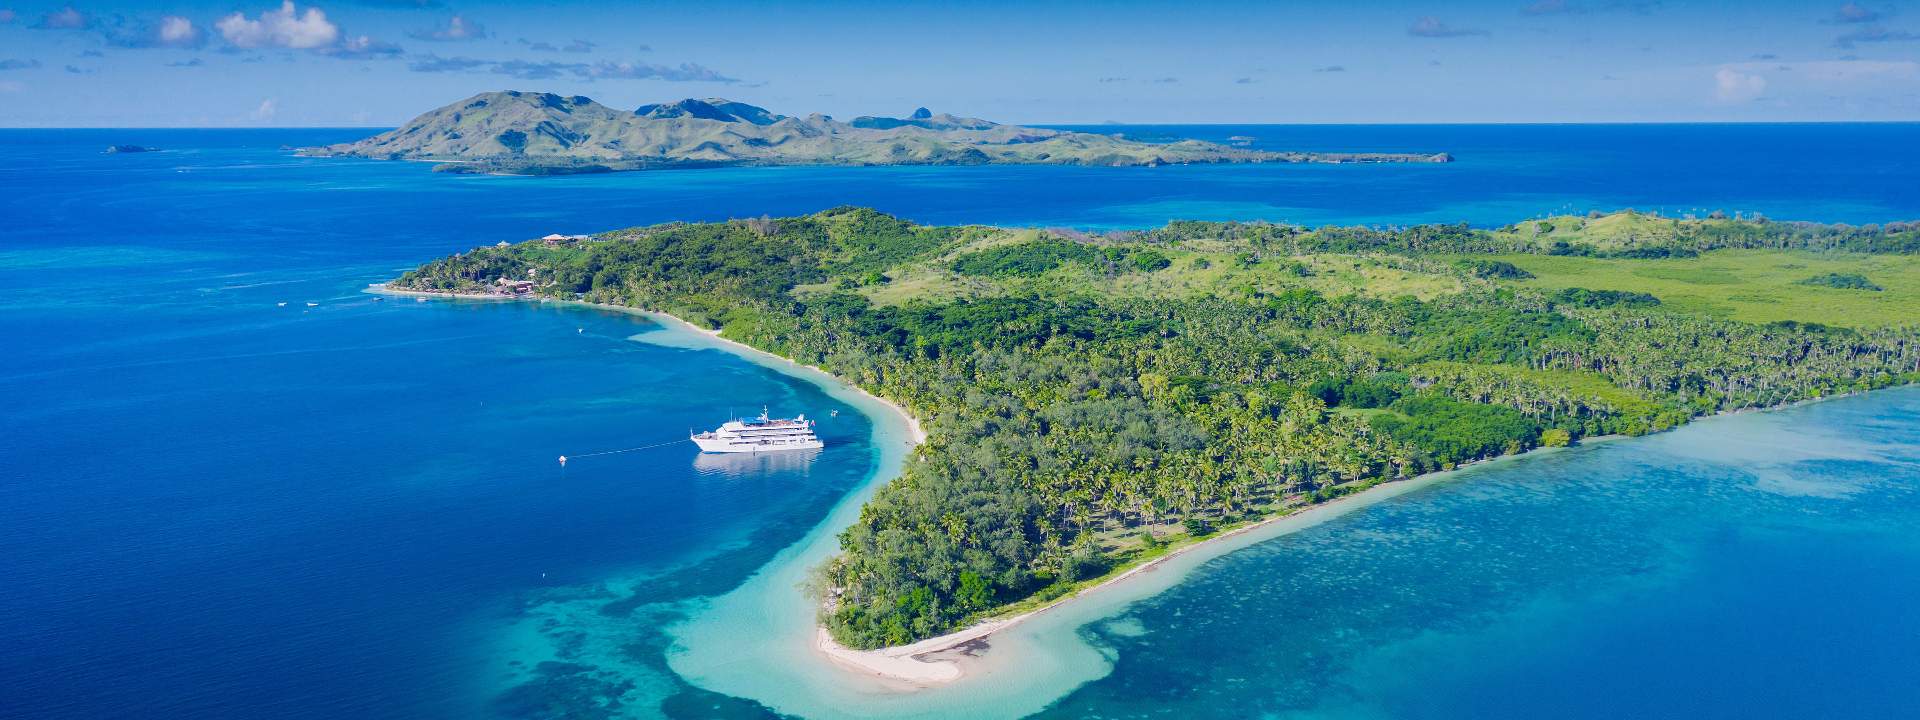 Haced una escapada en el archipiélago de las Fidji